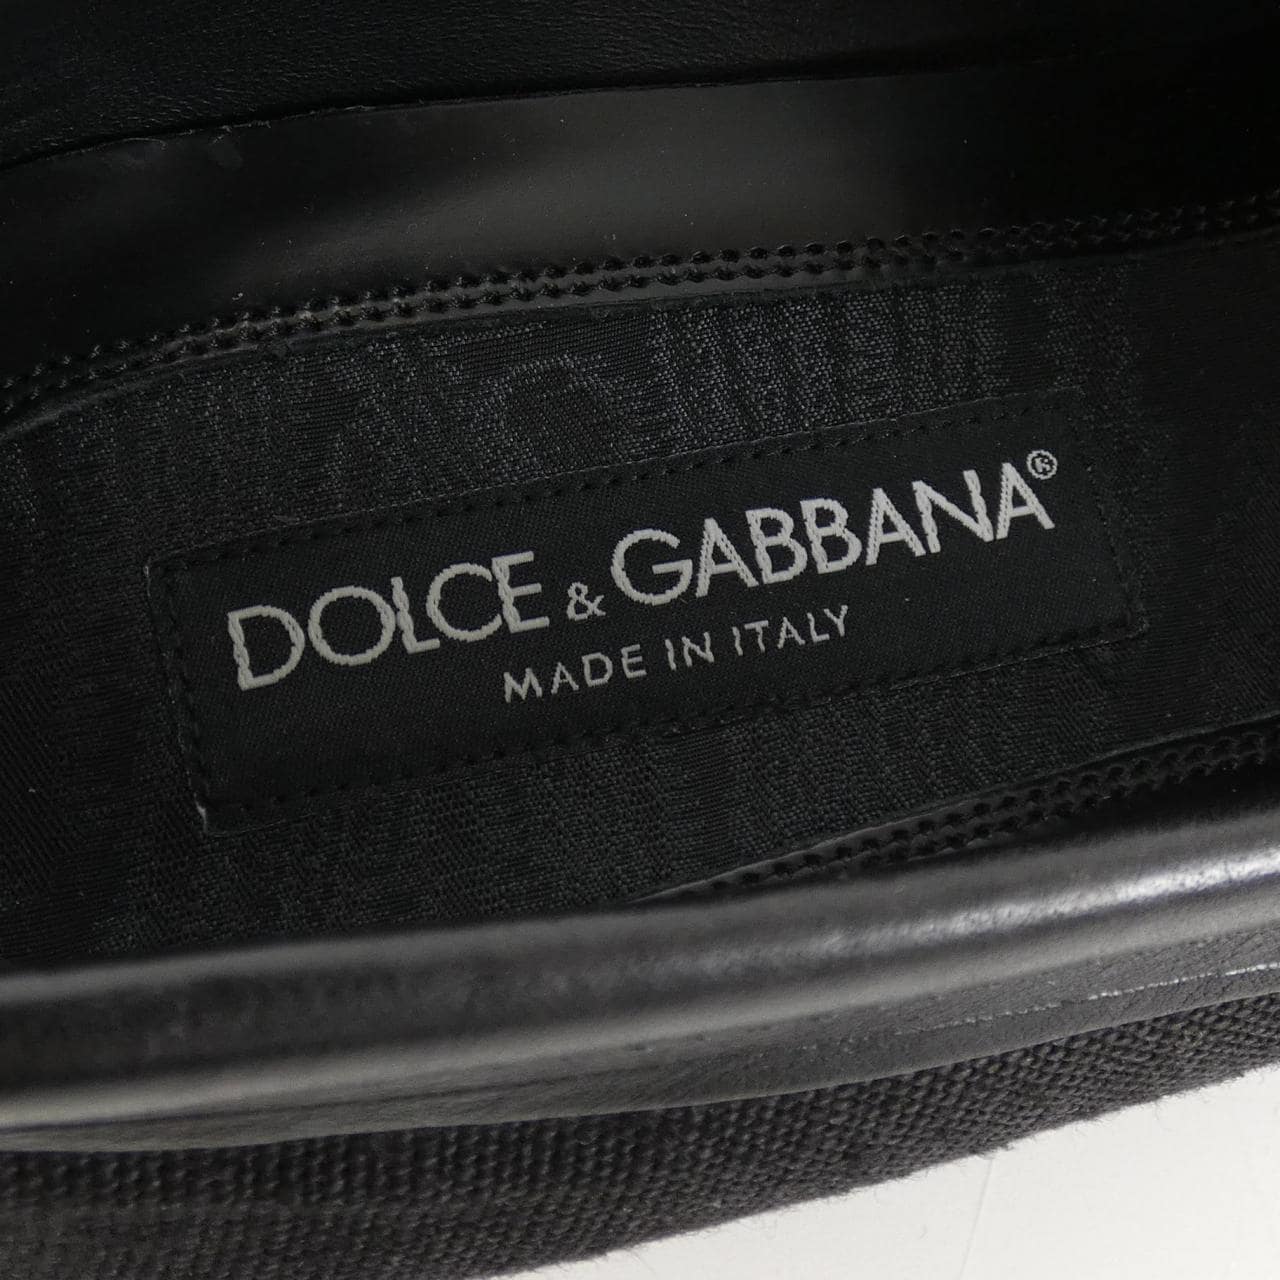 DOLCE&GABBANA嘉班納鞋履